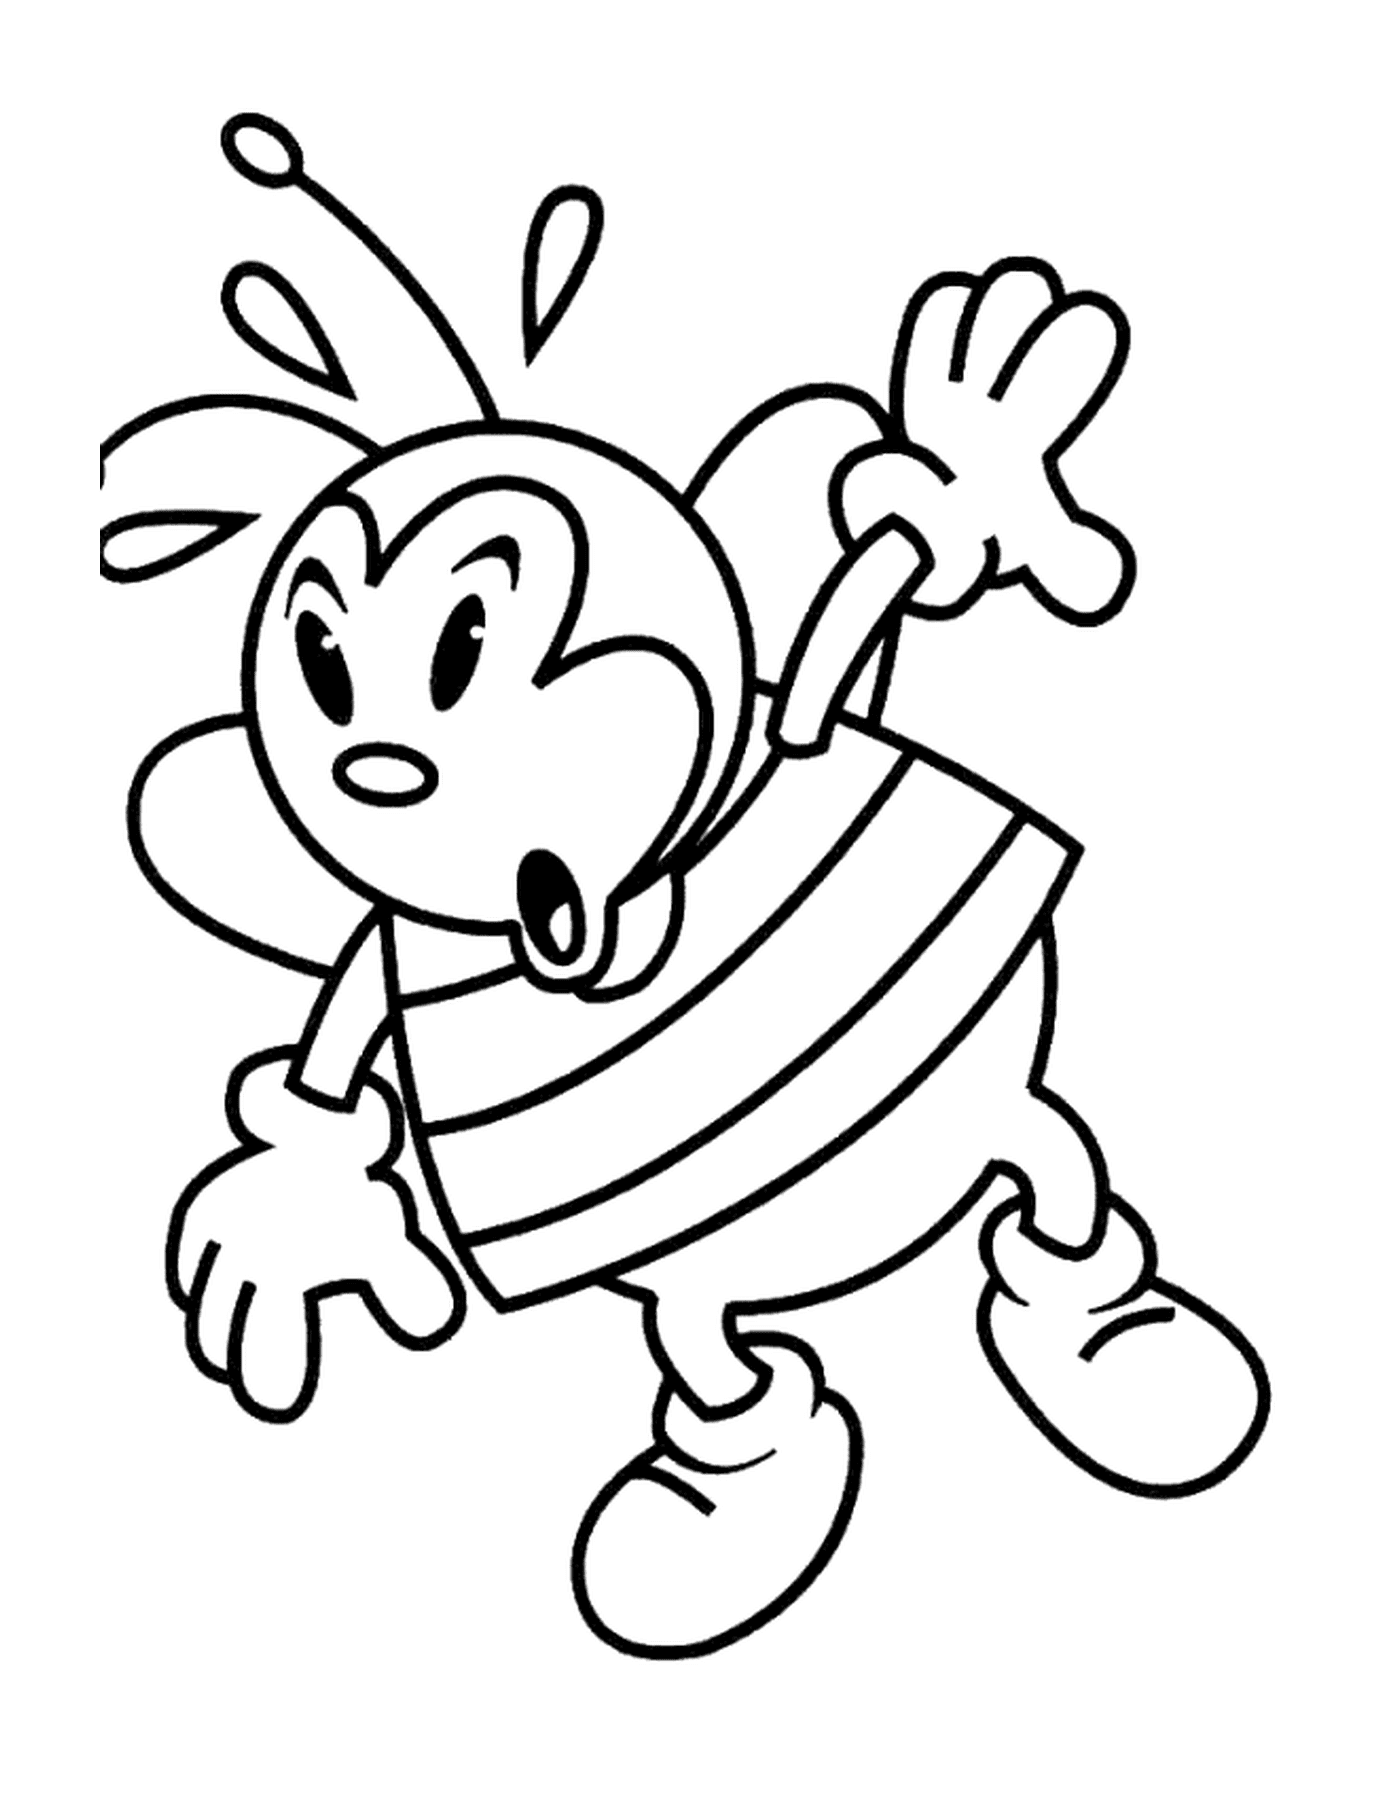  Zeichnung einer Biene statt eines Marienkäfers 